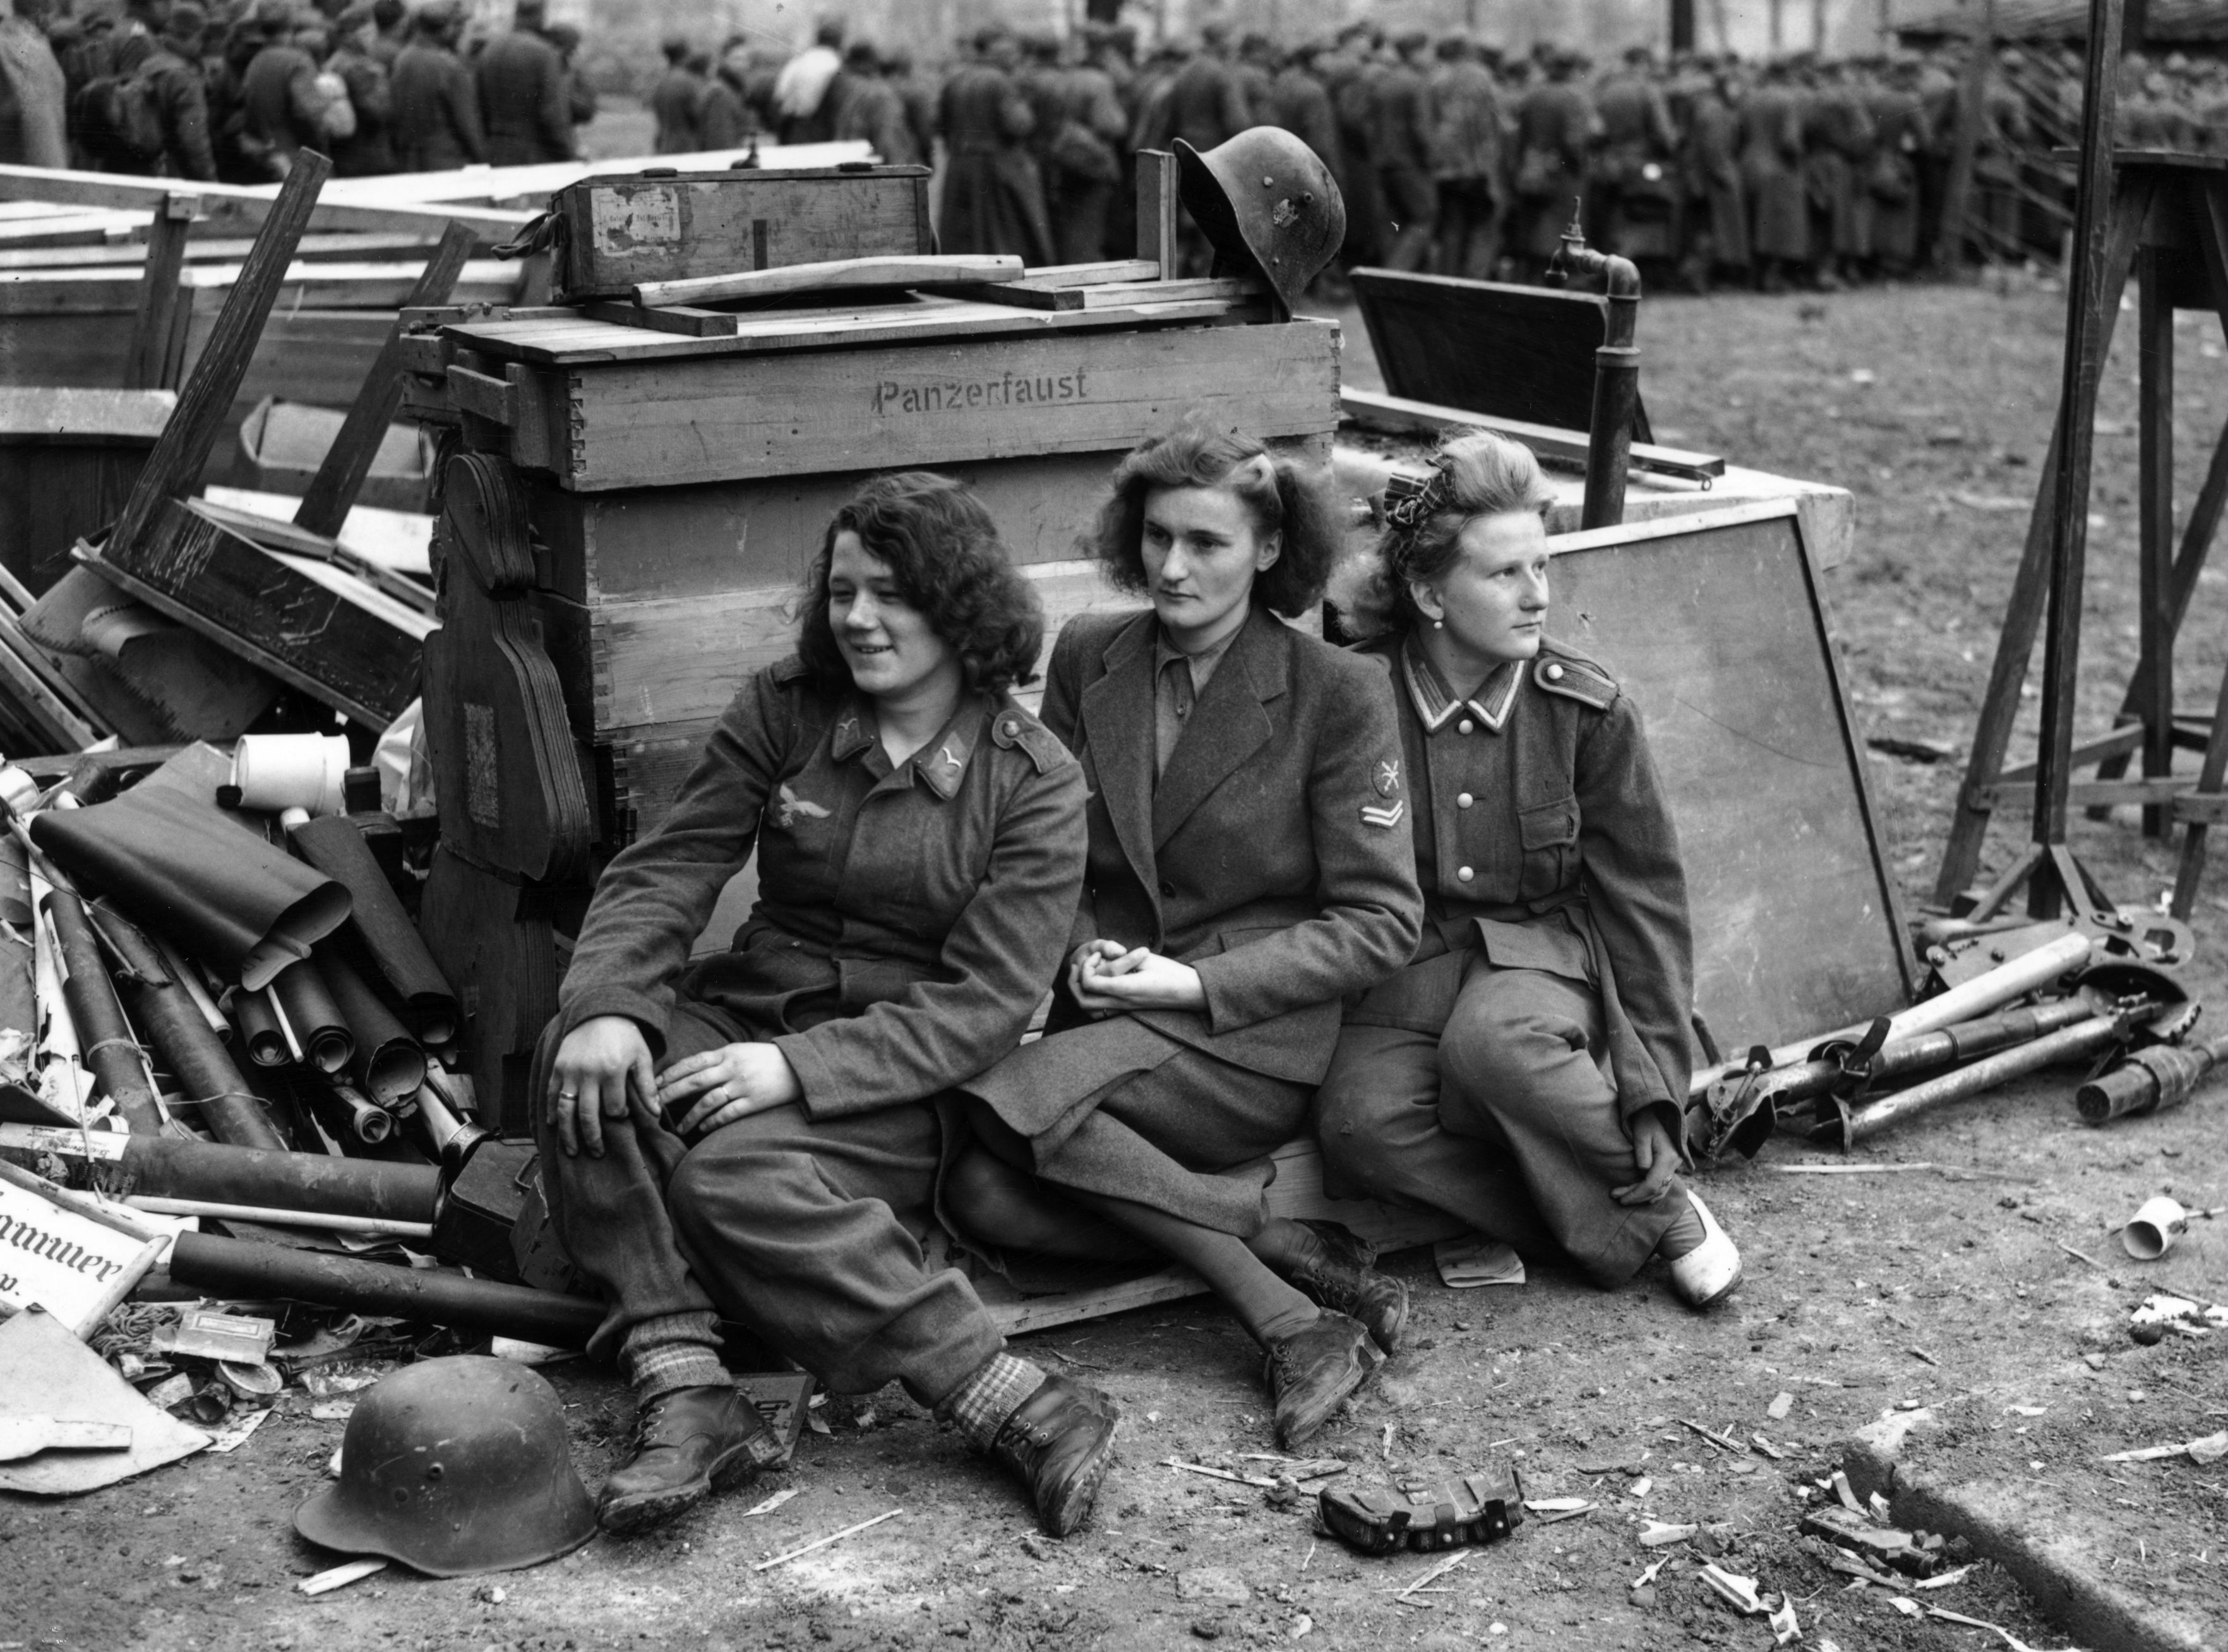 Германия сколько погибших. Немецкие военнопленные в Германии 1945. Германия 1945 год пленные немецкие солдаты. Немки в Германии в 1945 и советские солдаты. Пленные женщины на войне 1941-1945.